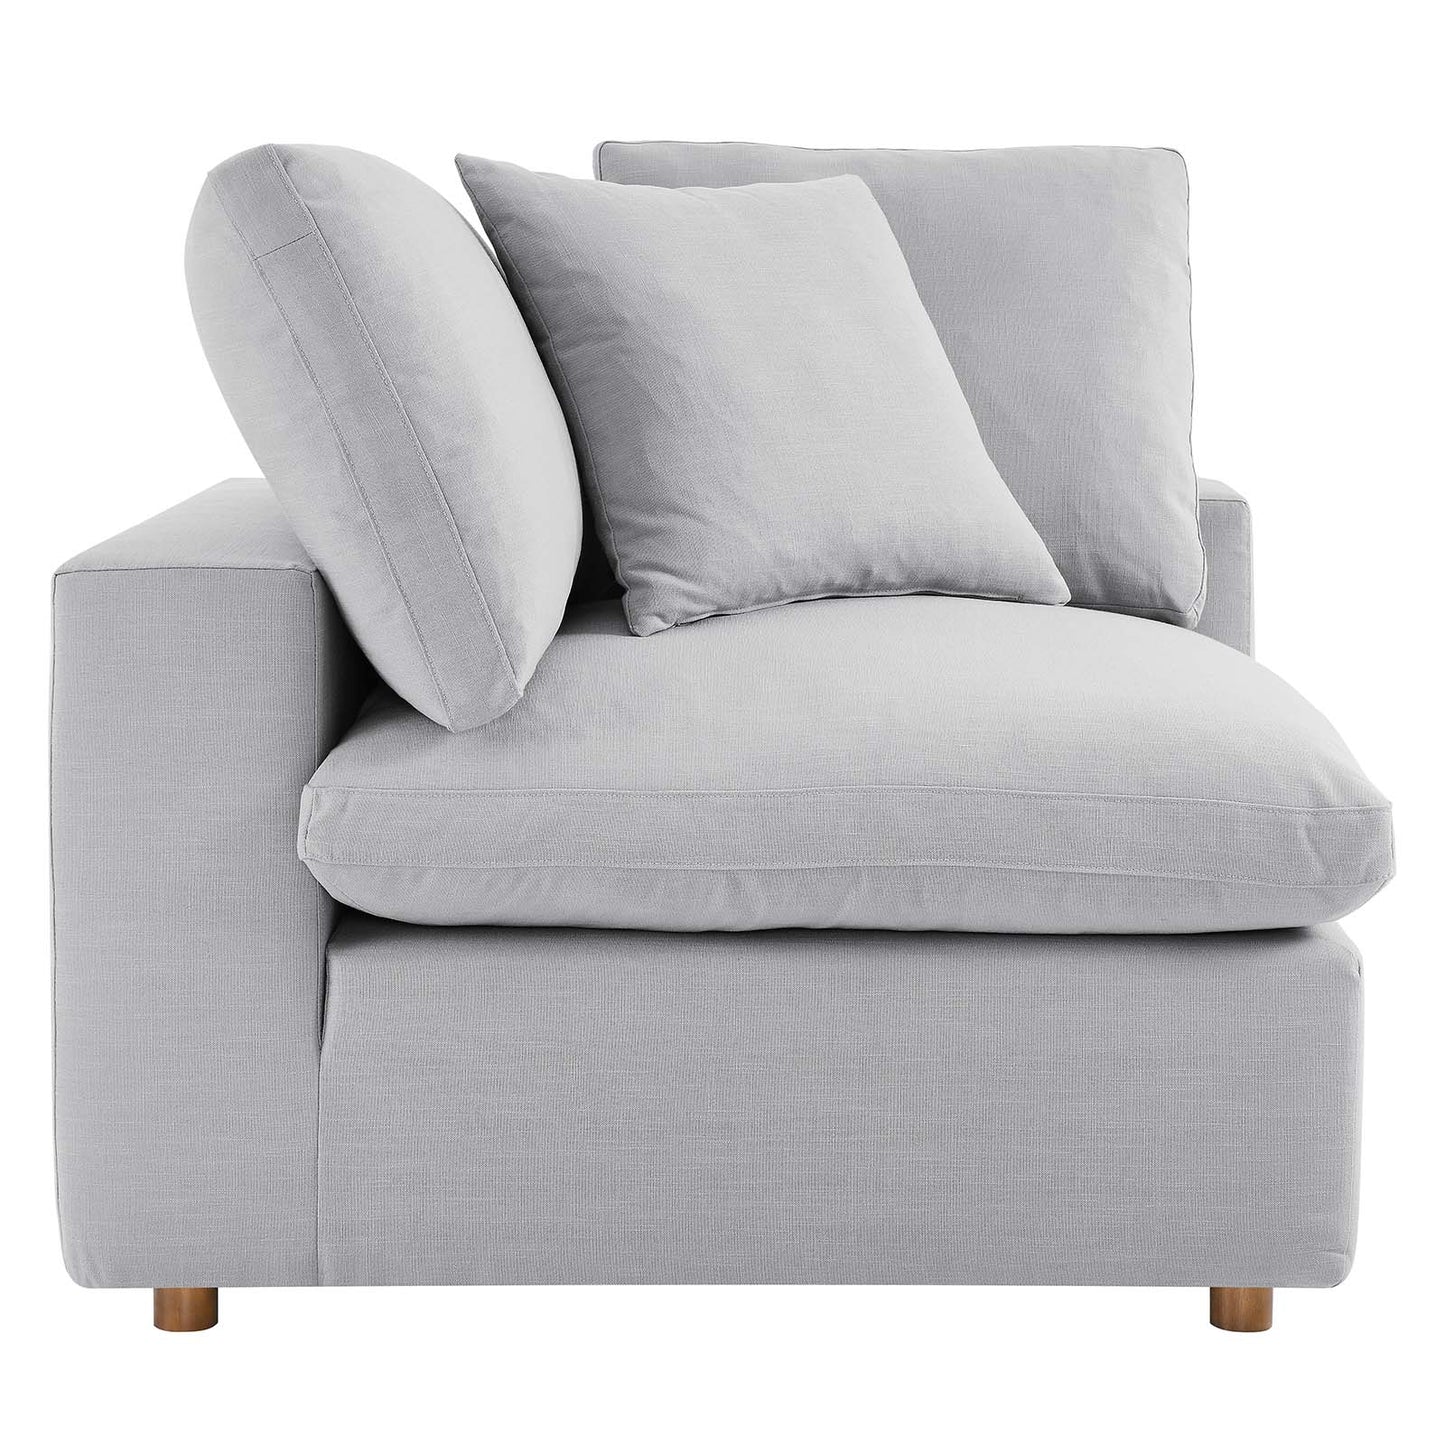 Commix Down Filled Overstuffed 6-Piece Sectional Sofa Light Gray EEI-3362-LGR